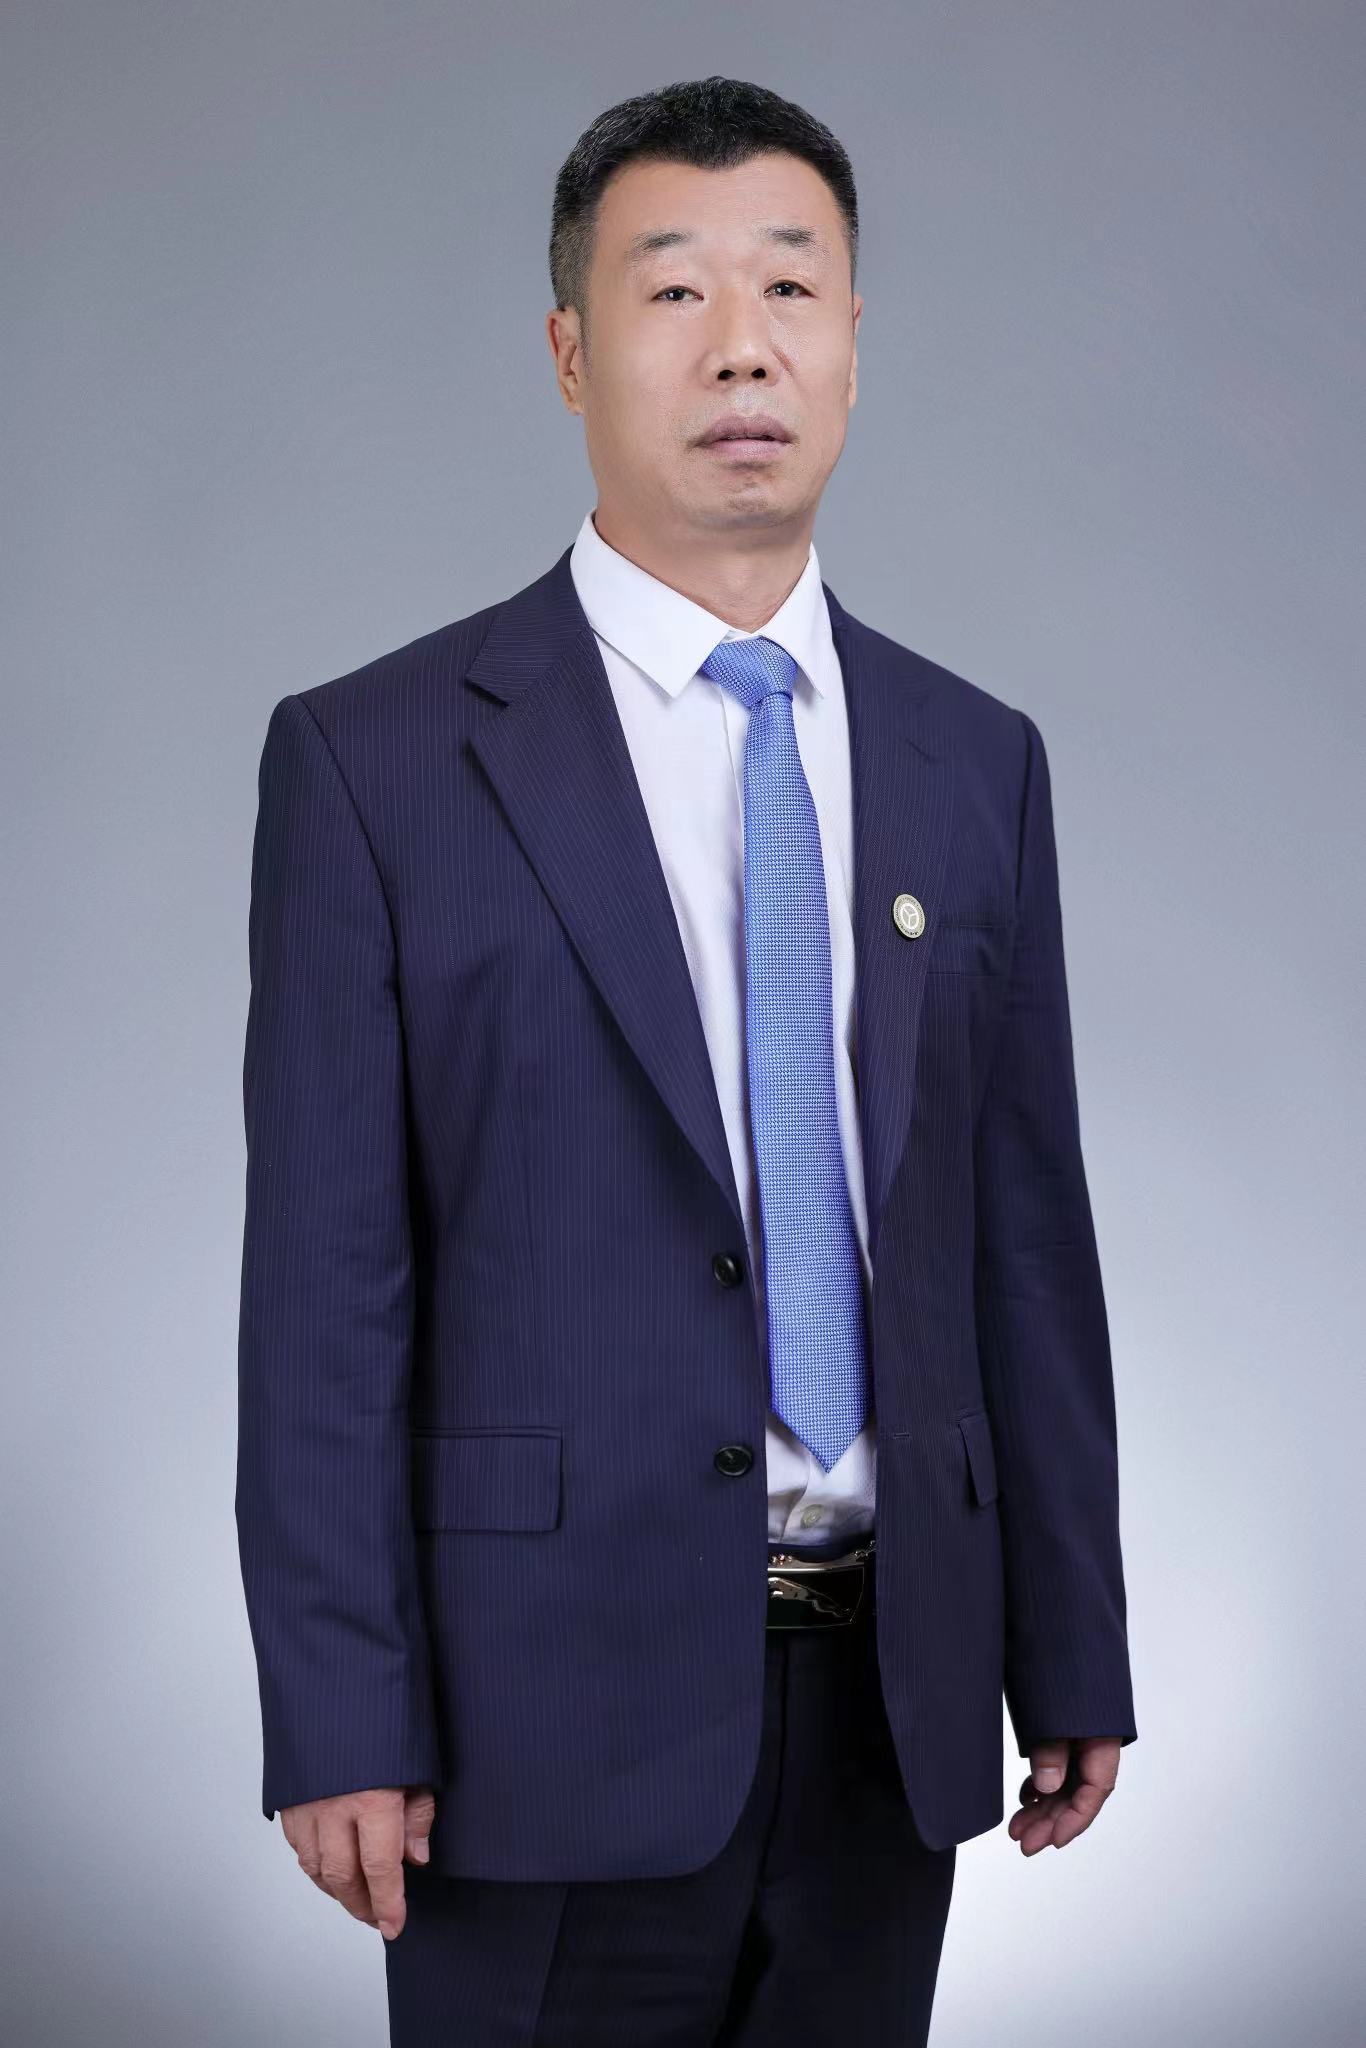 刘桂财 律师